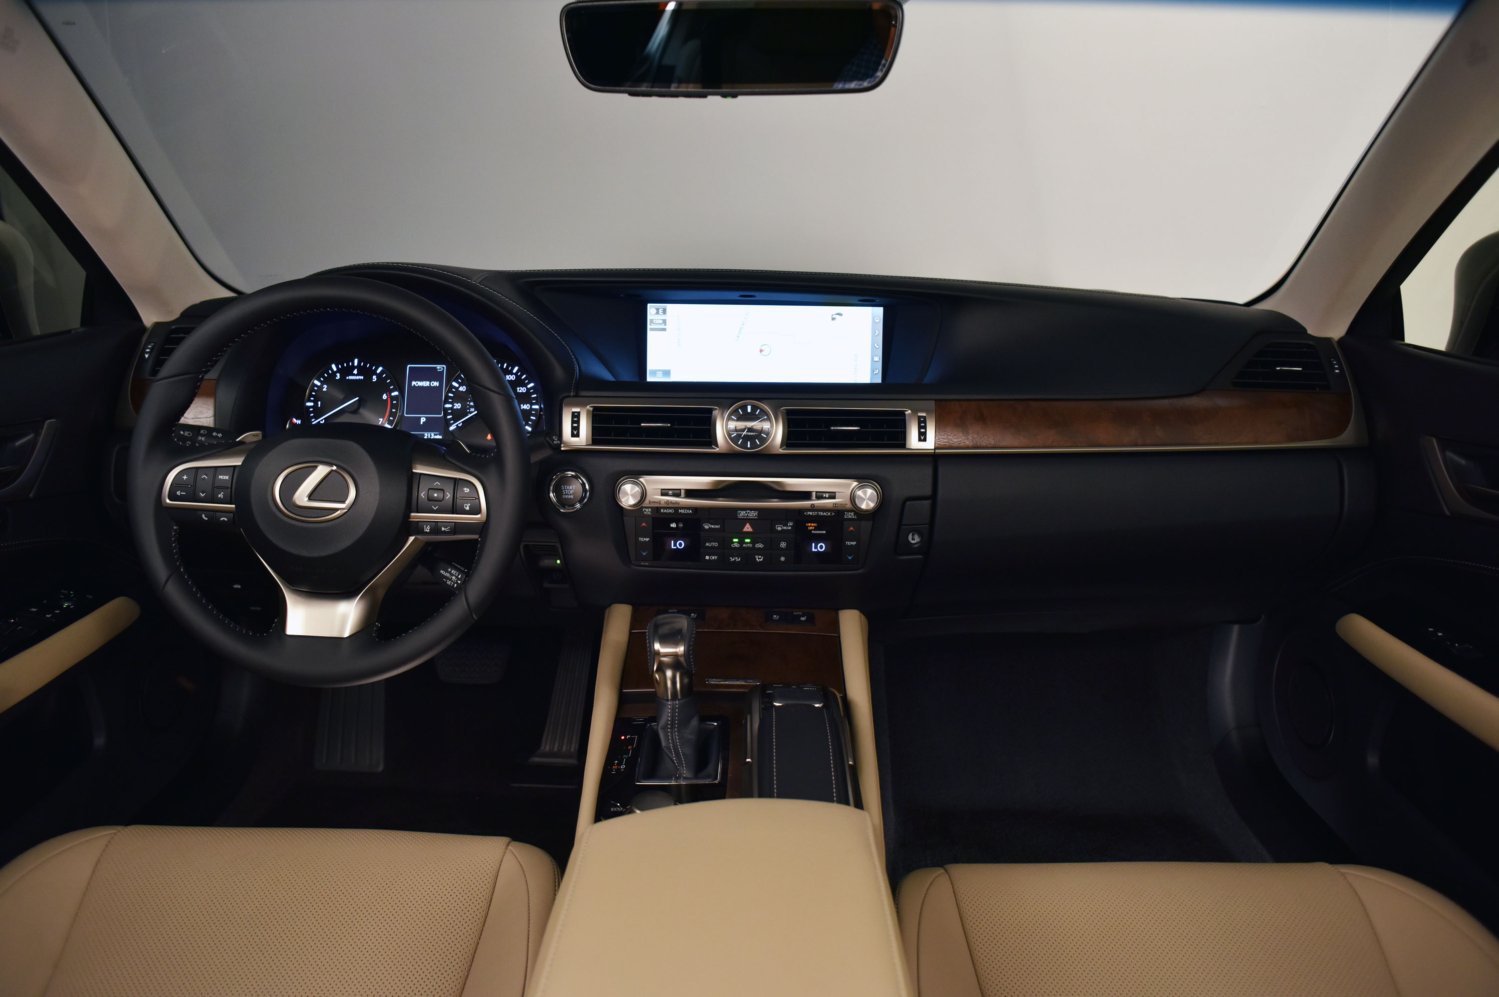 Interiér Lexusu GS se dočkal změn hlavně u obou výrazných displayů.